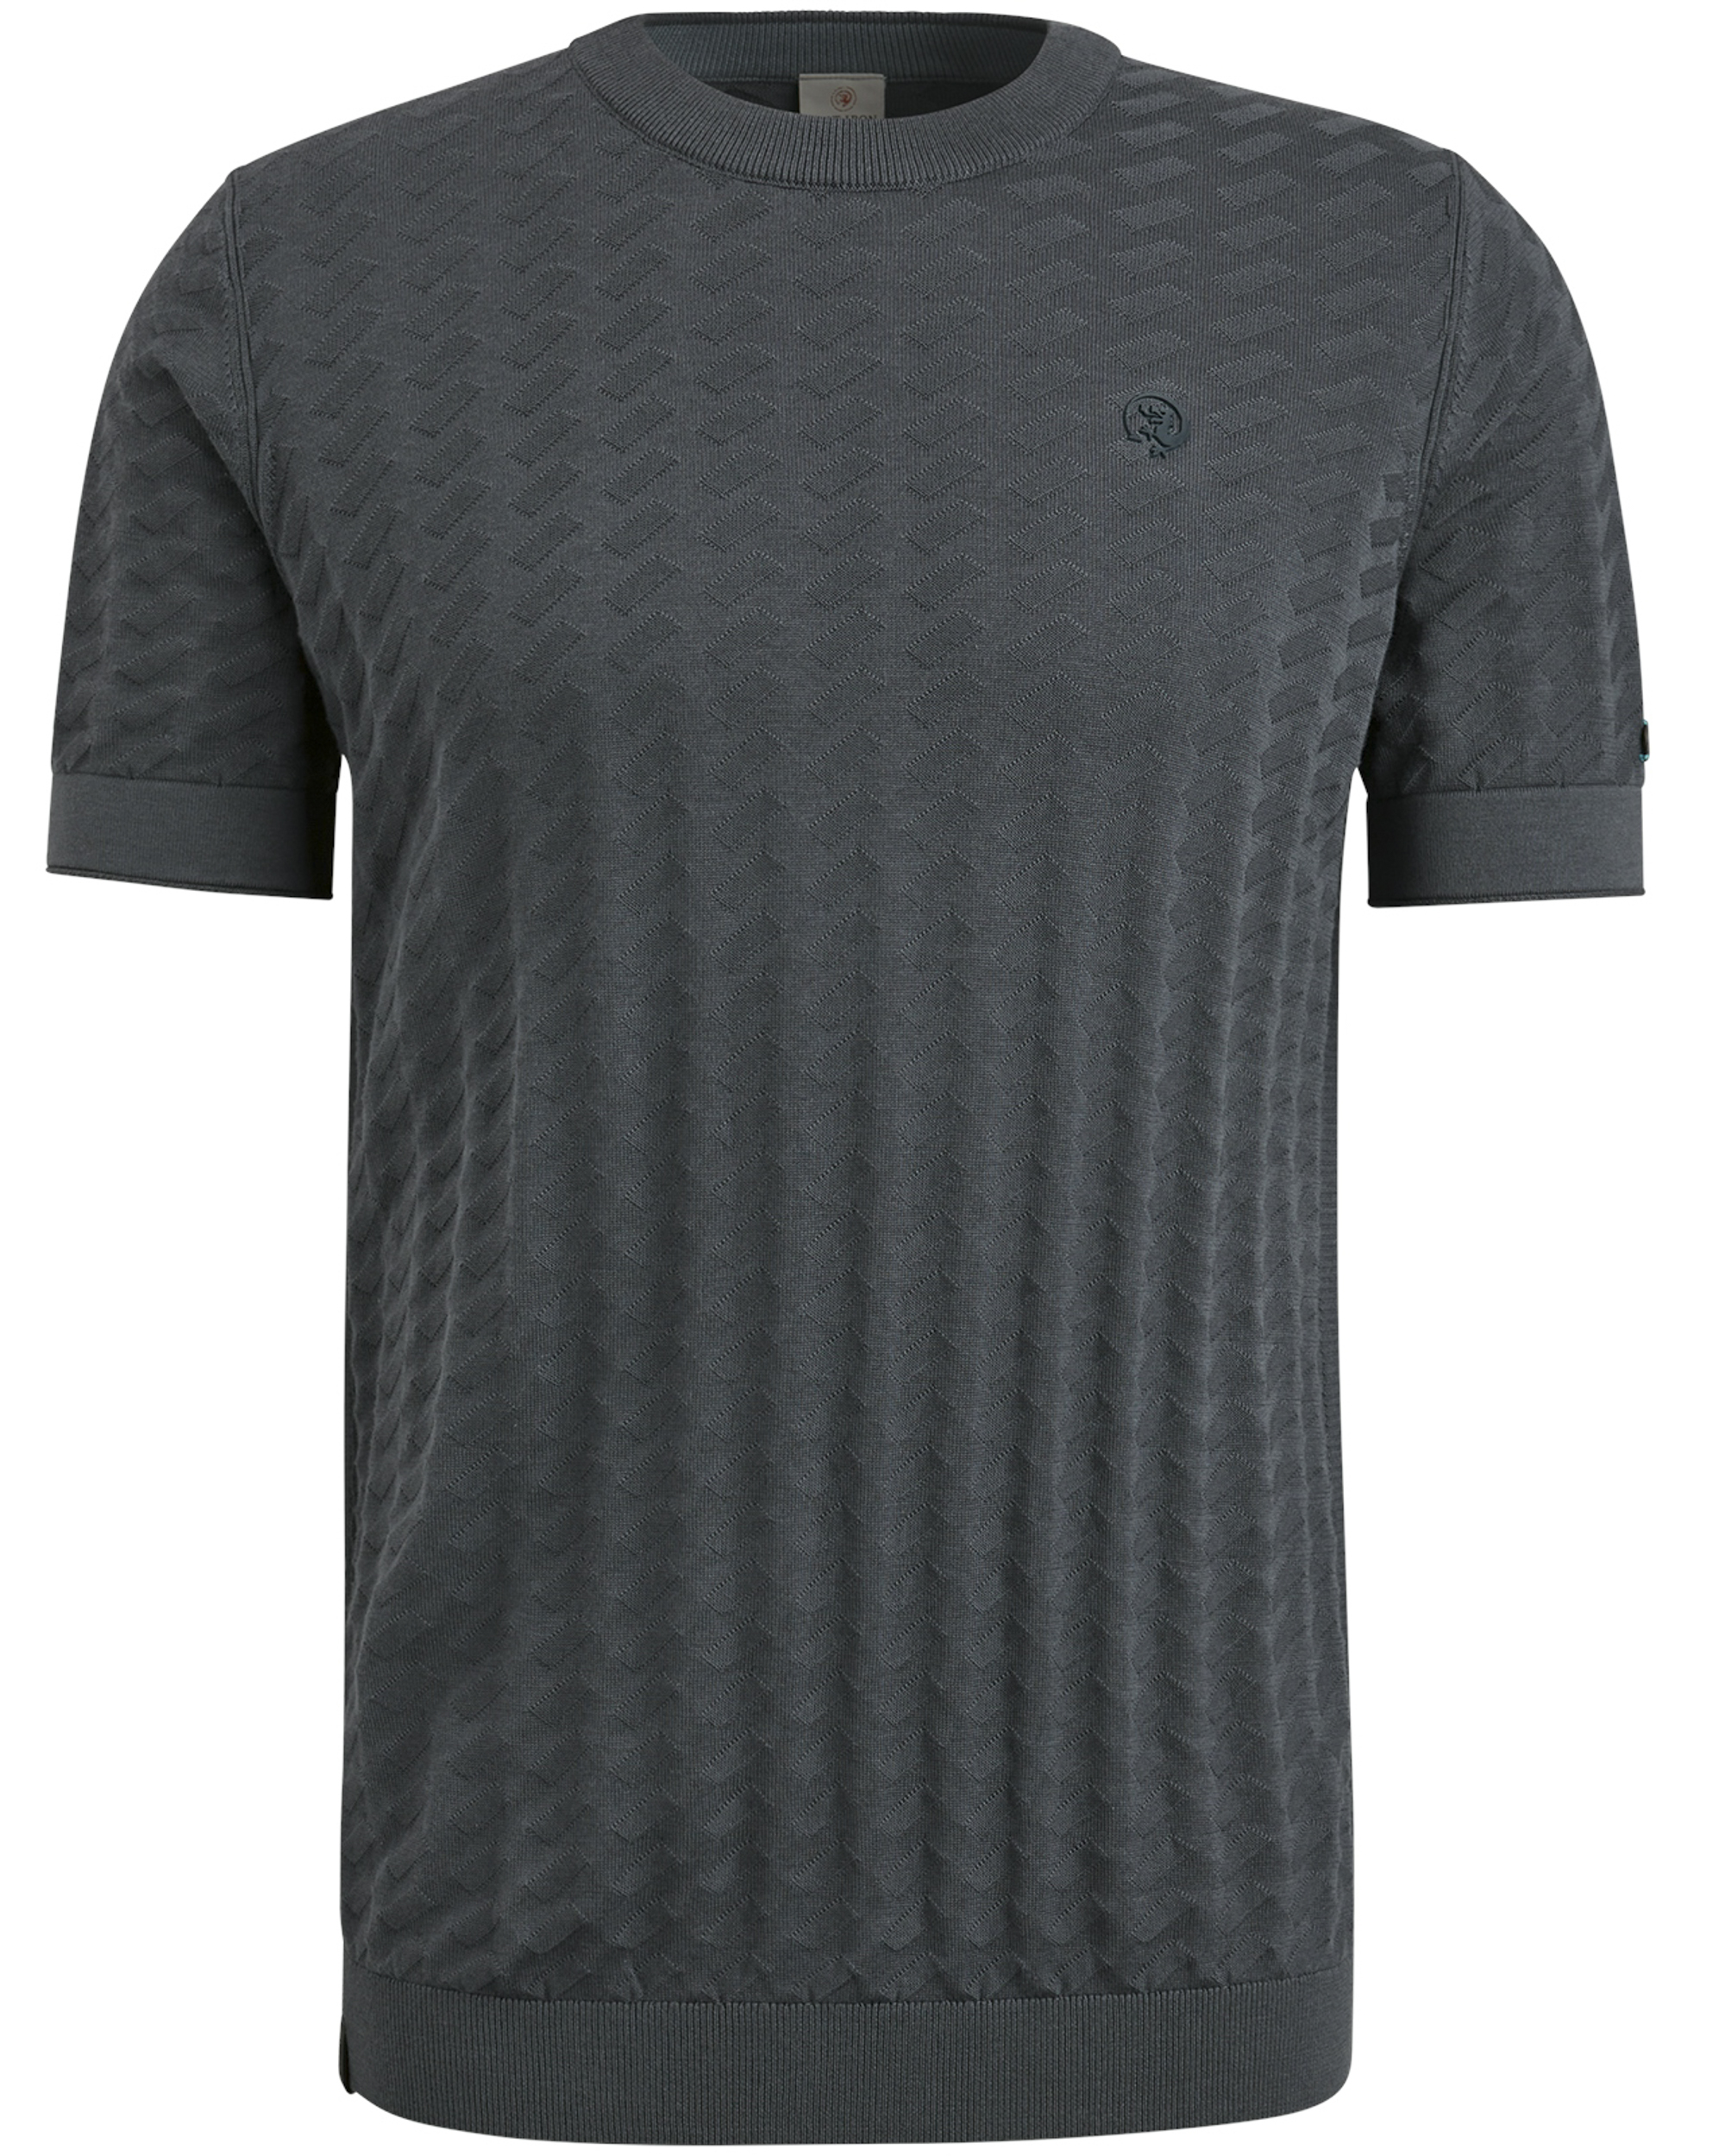 Cast Iron fijngebreid T-shirt met logo grijs